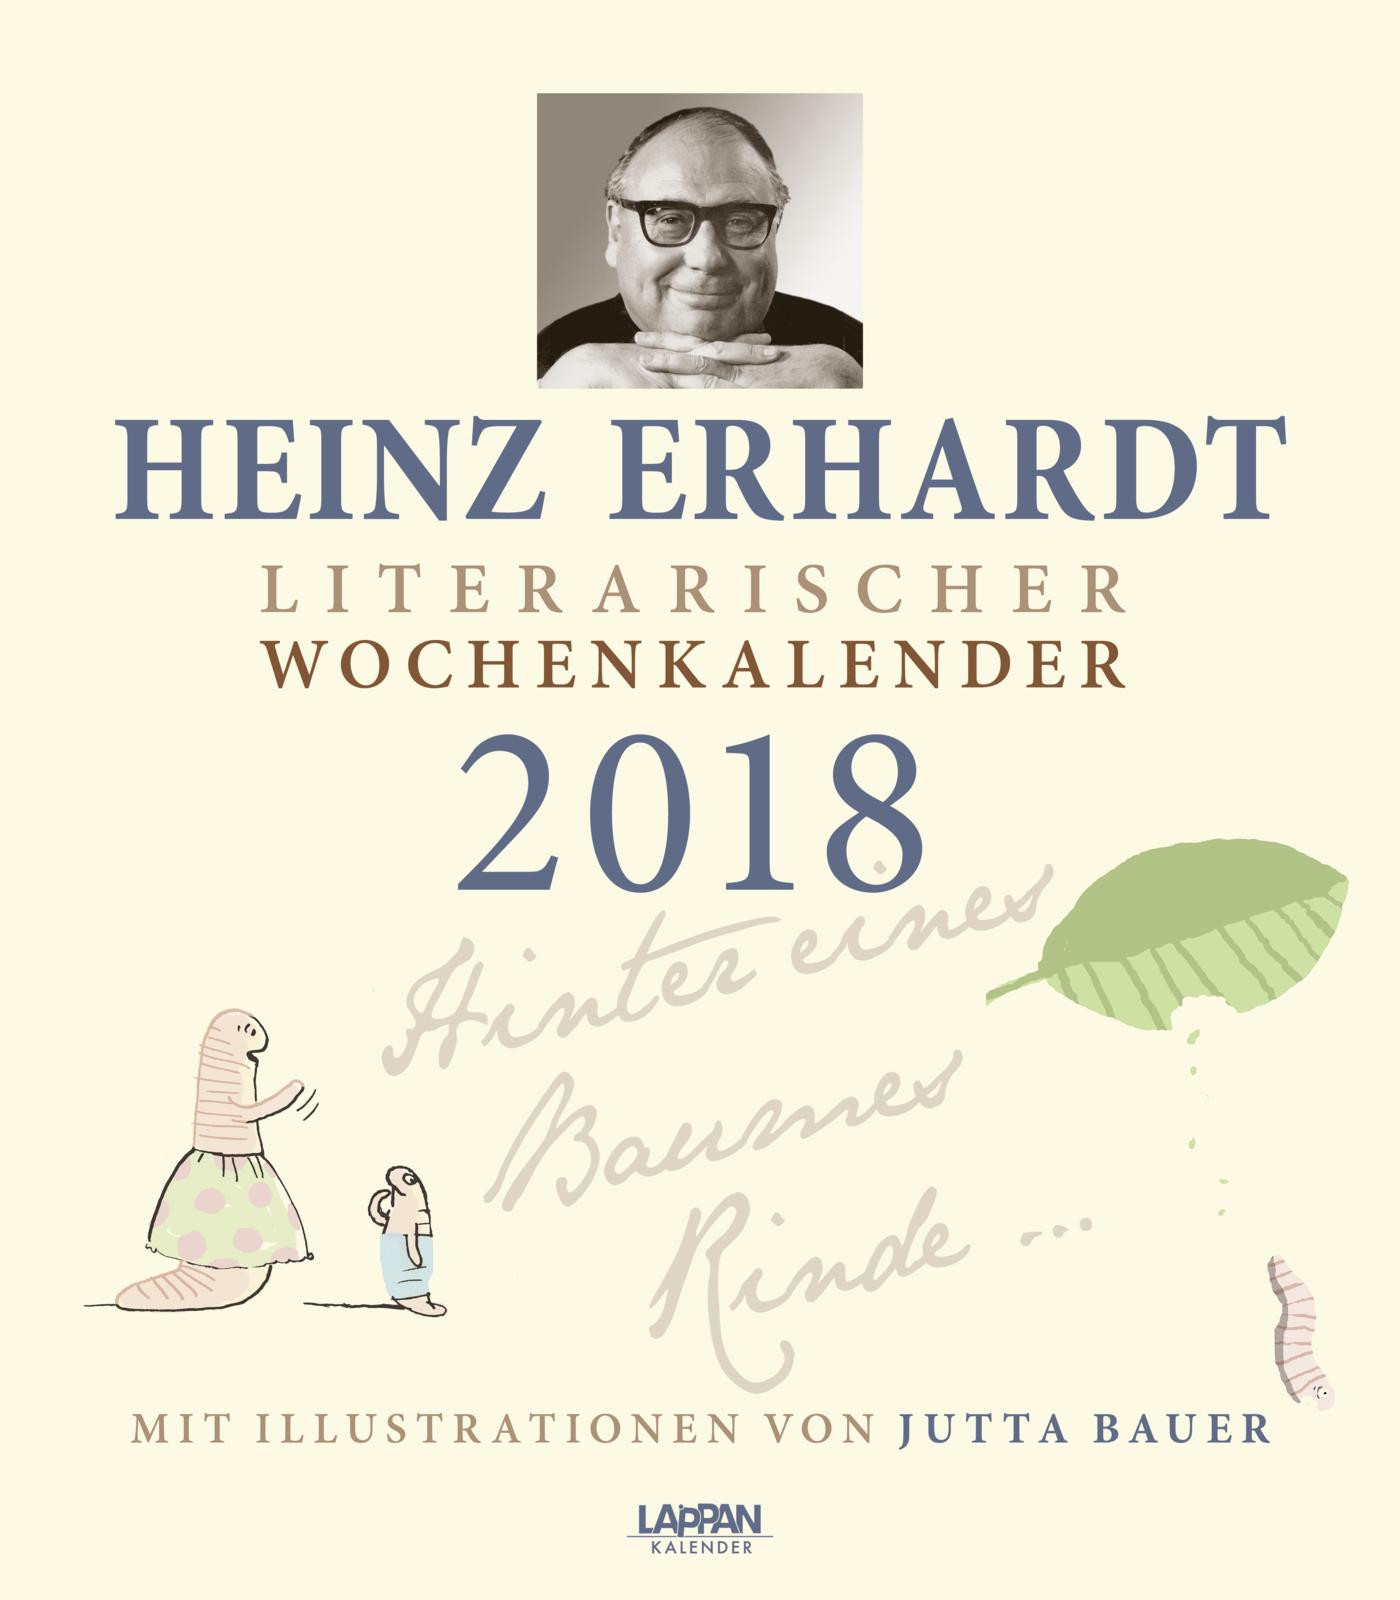 Heinz Erhardt Hochzeit
 Elegant Goldene Hochzeit Gedicht Heinz Erhardt – Schmuck